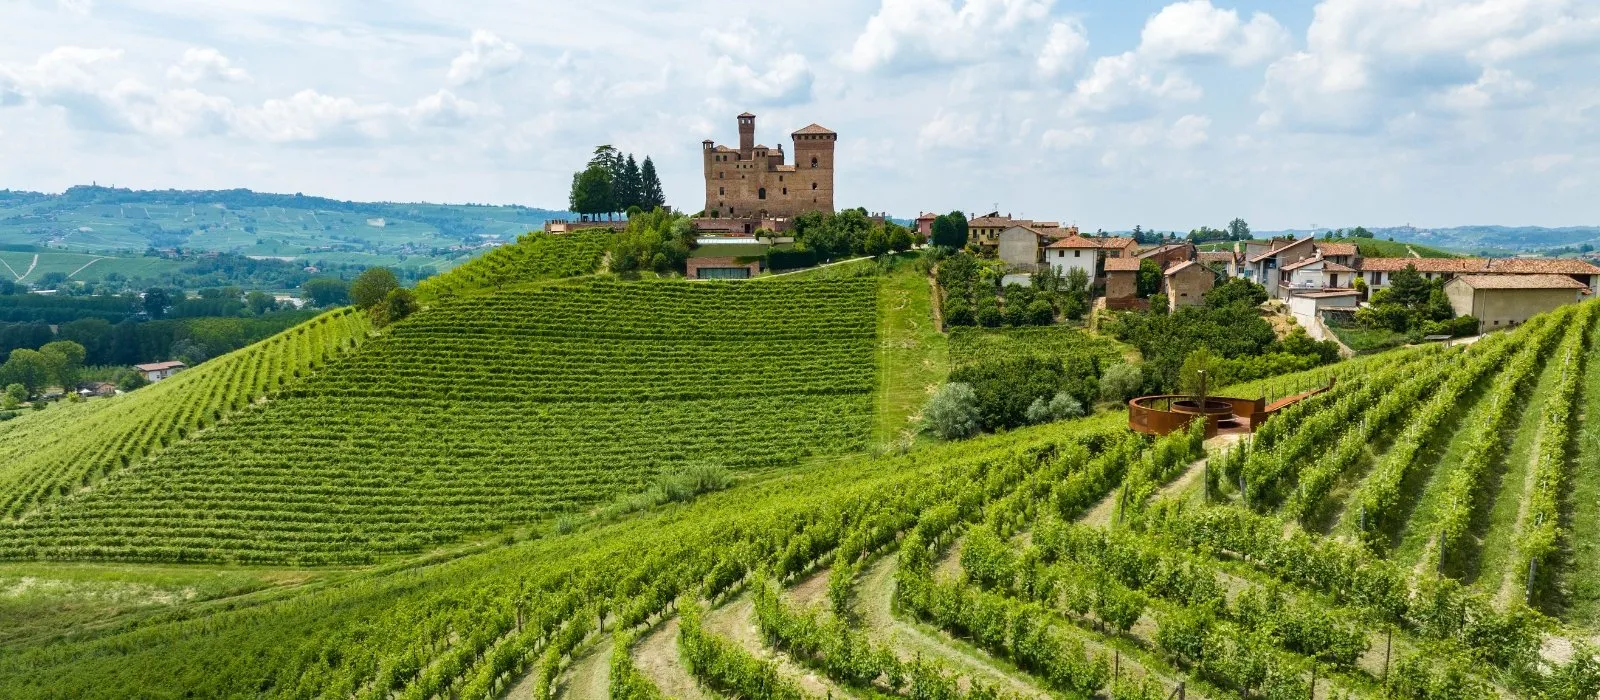 The Vineyards of Monferrato